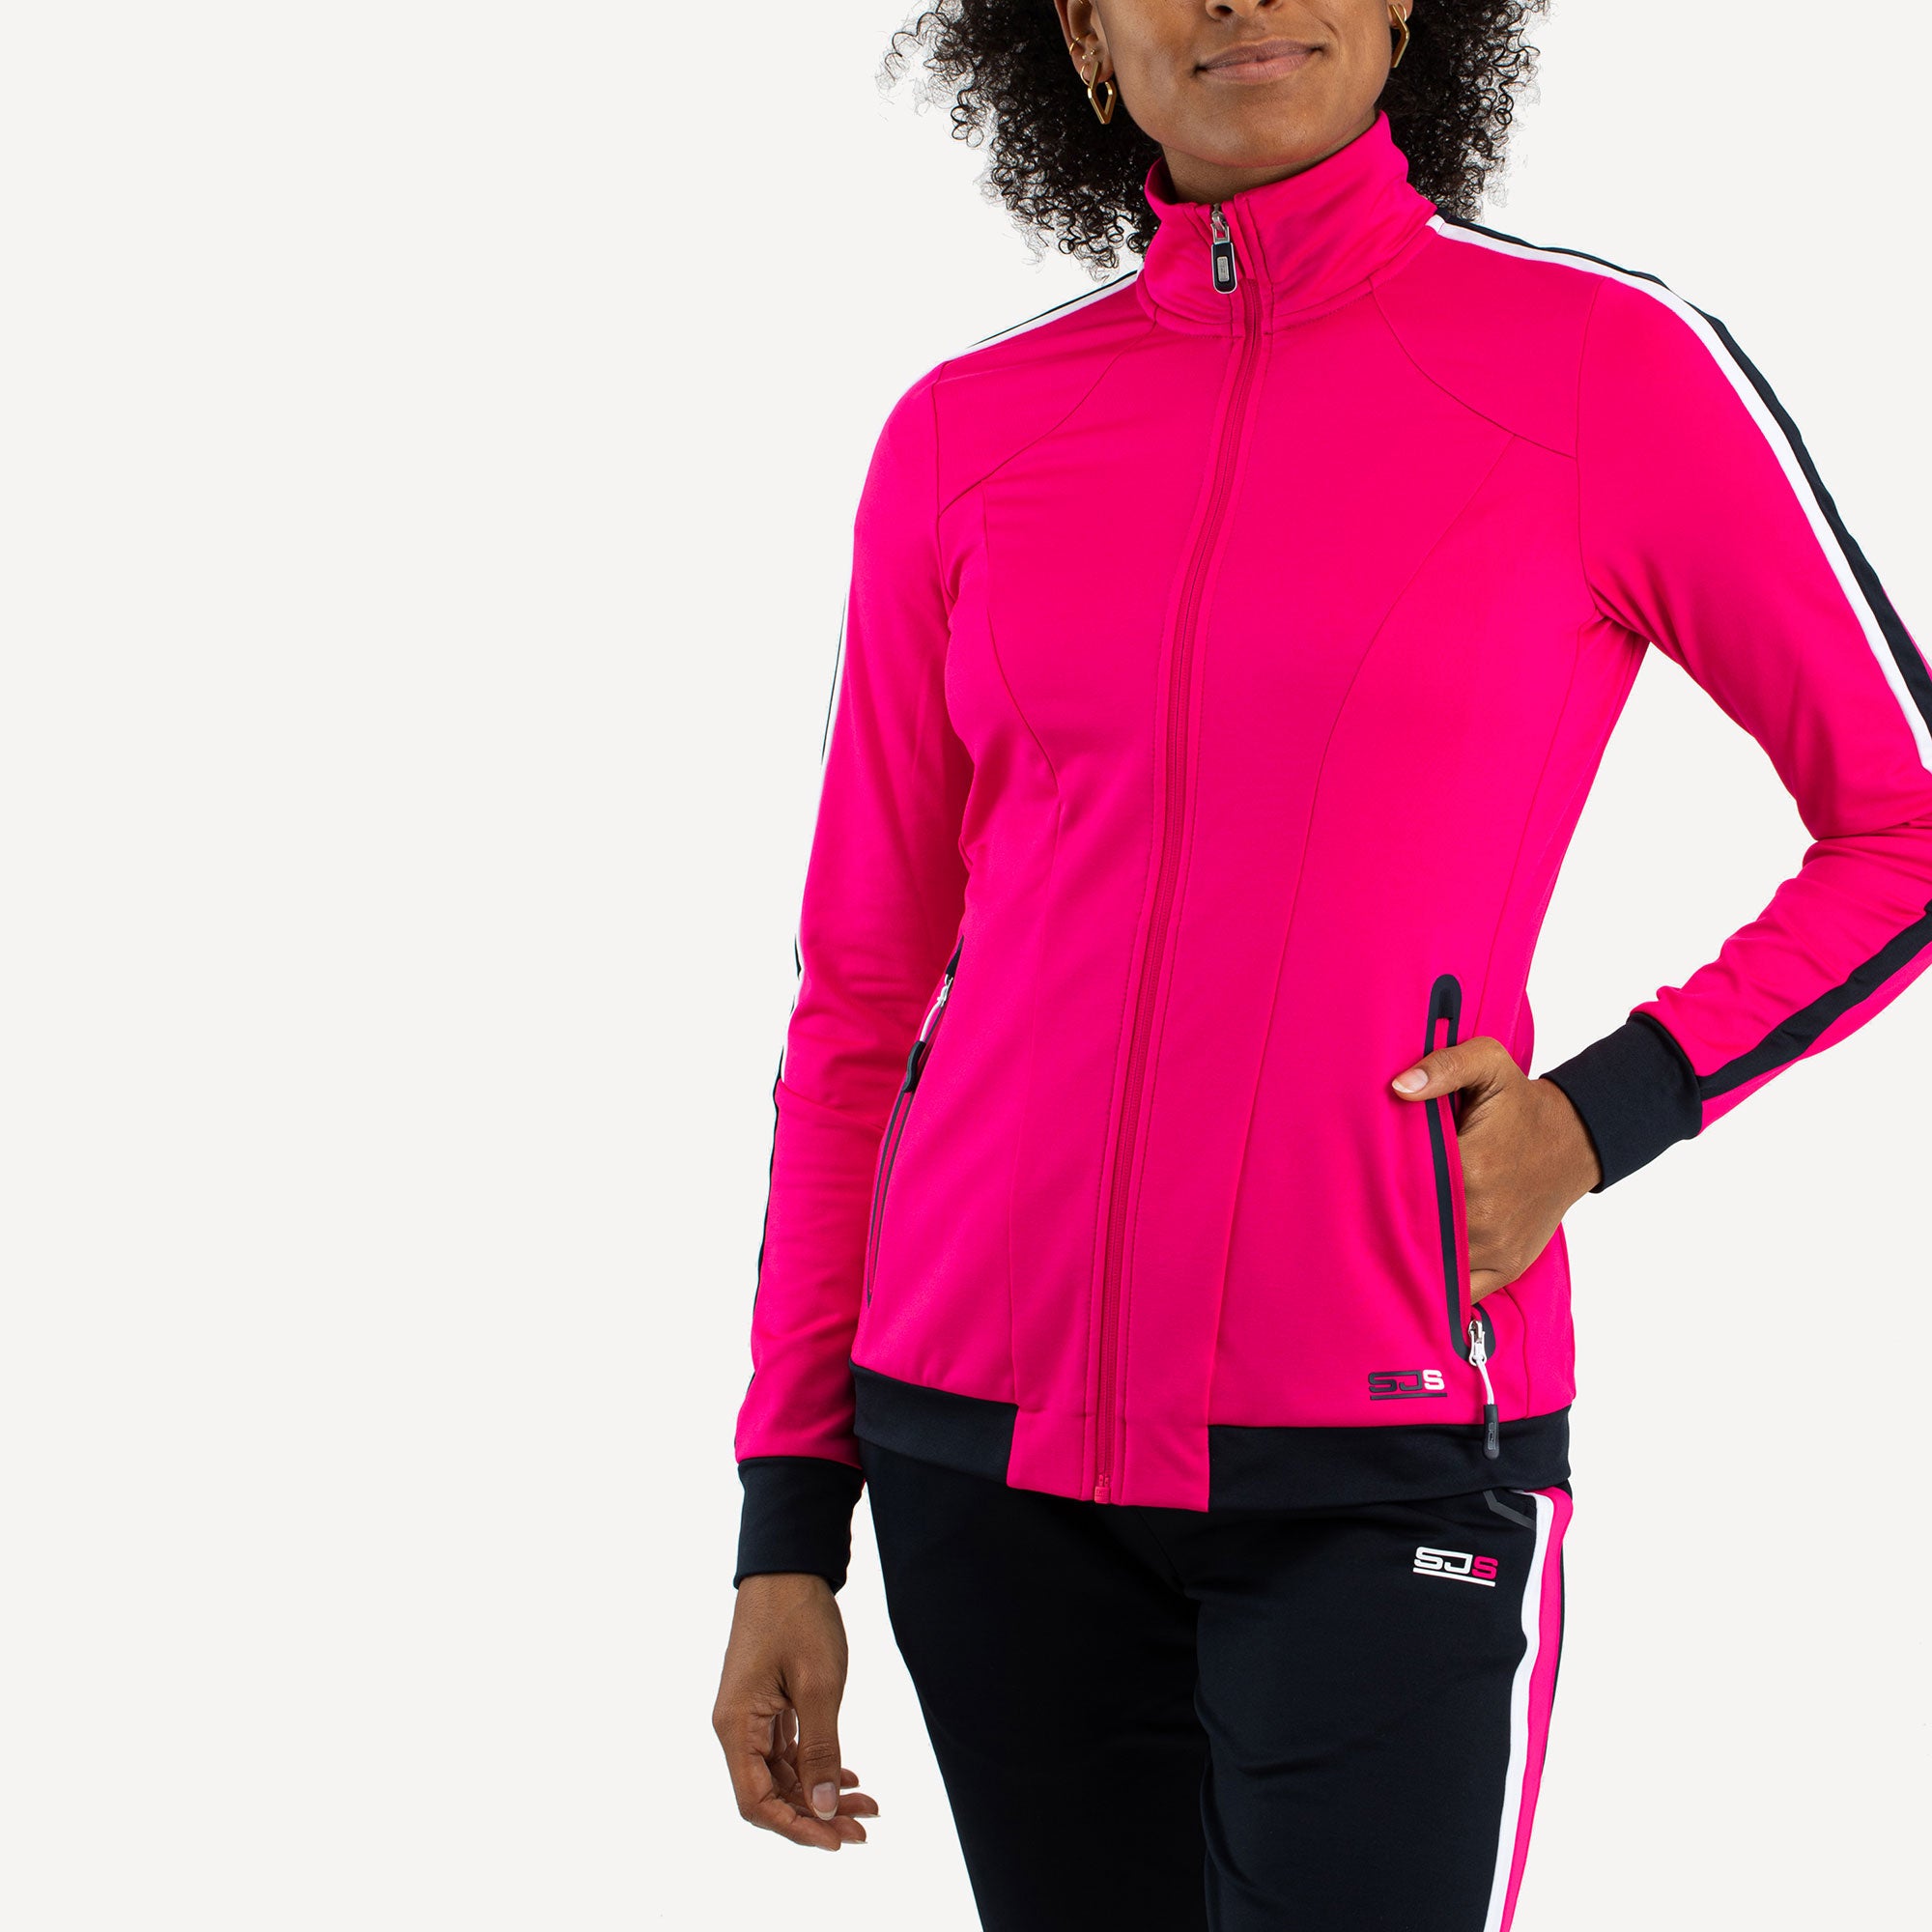 Sjeng Sports Aviva Women's Tennis Jacket Pink (1)